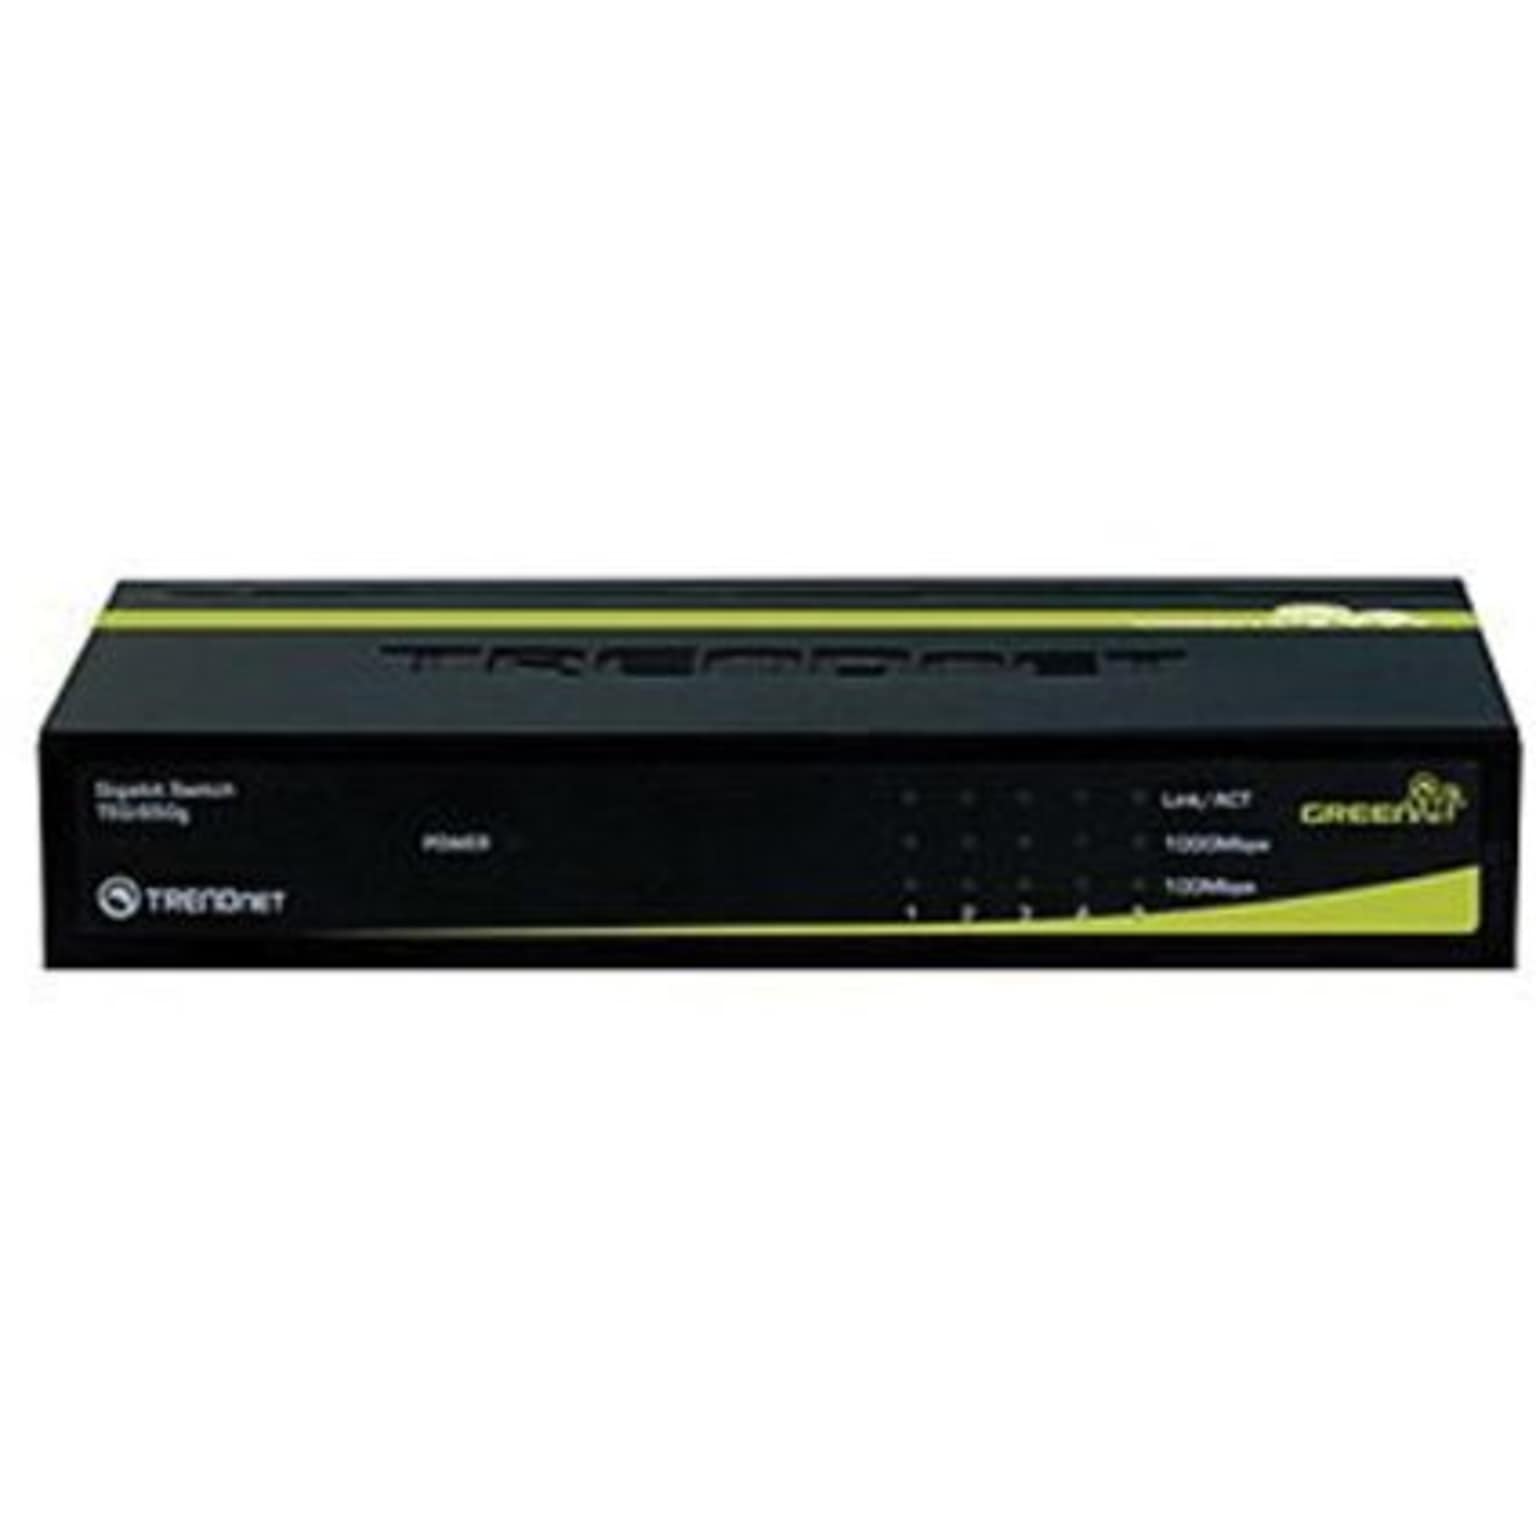 TRENDNET® TEG-S50G Gigabit GREENnet Switch; 5 Ports